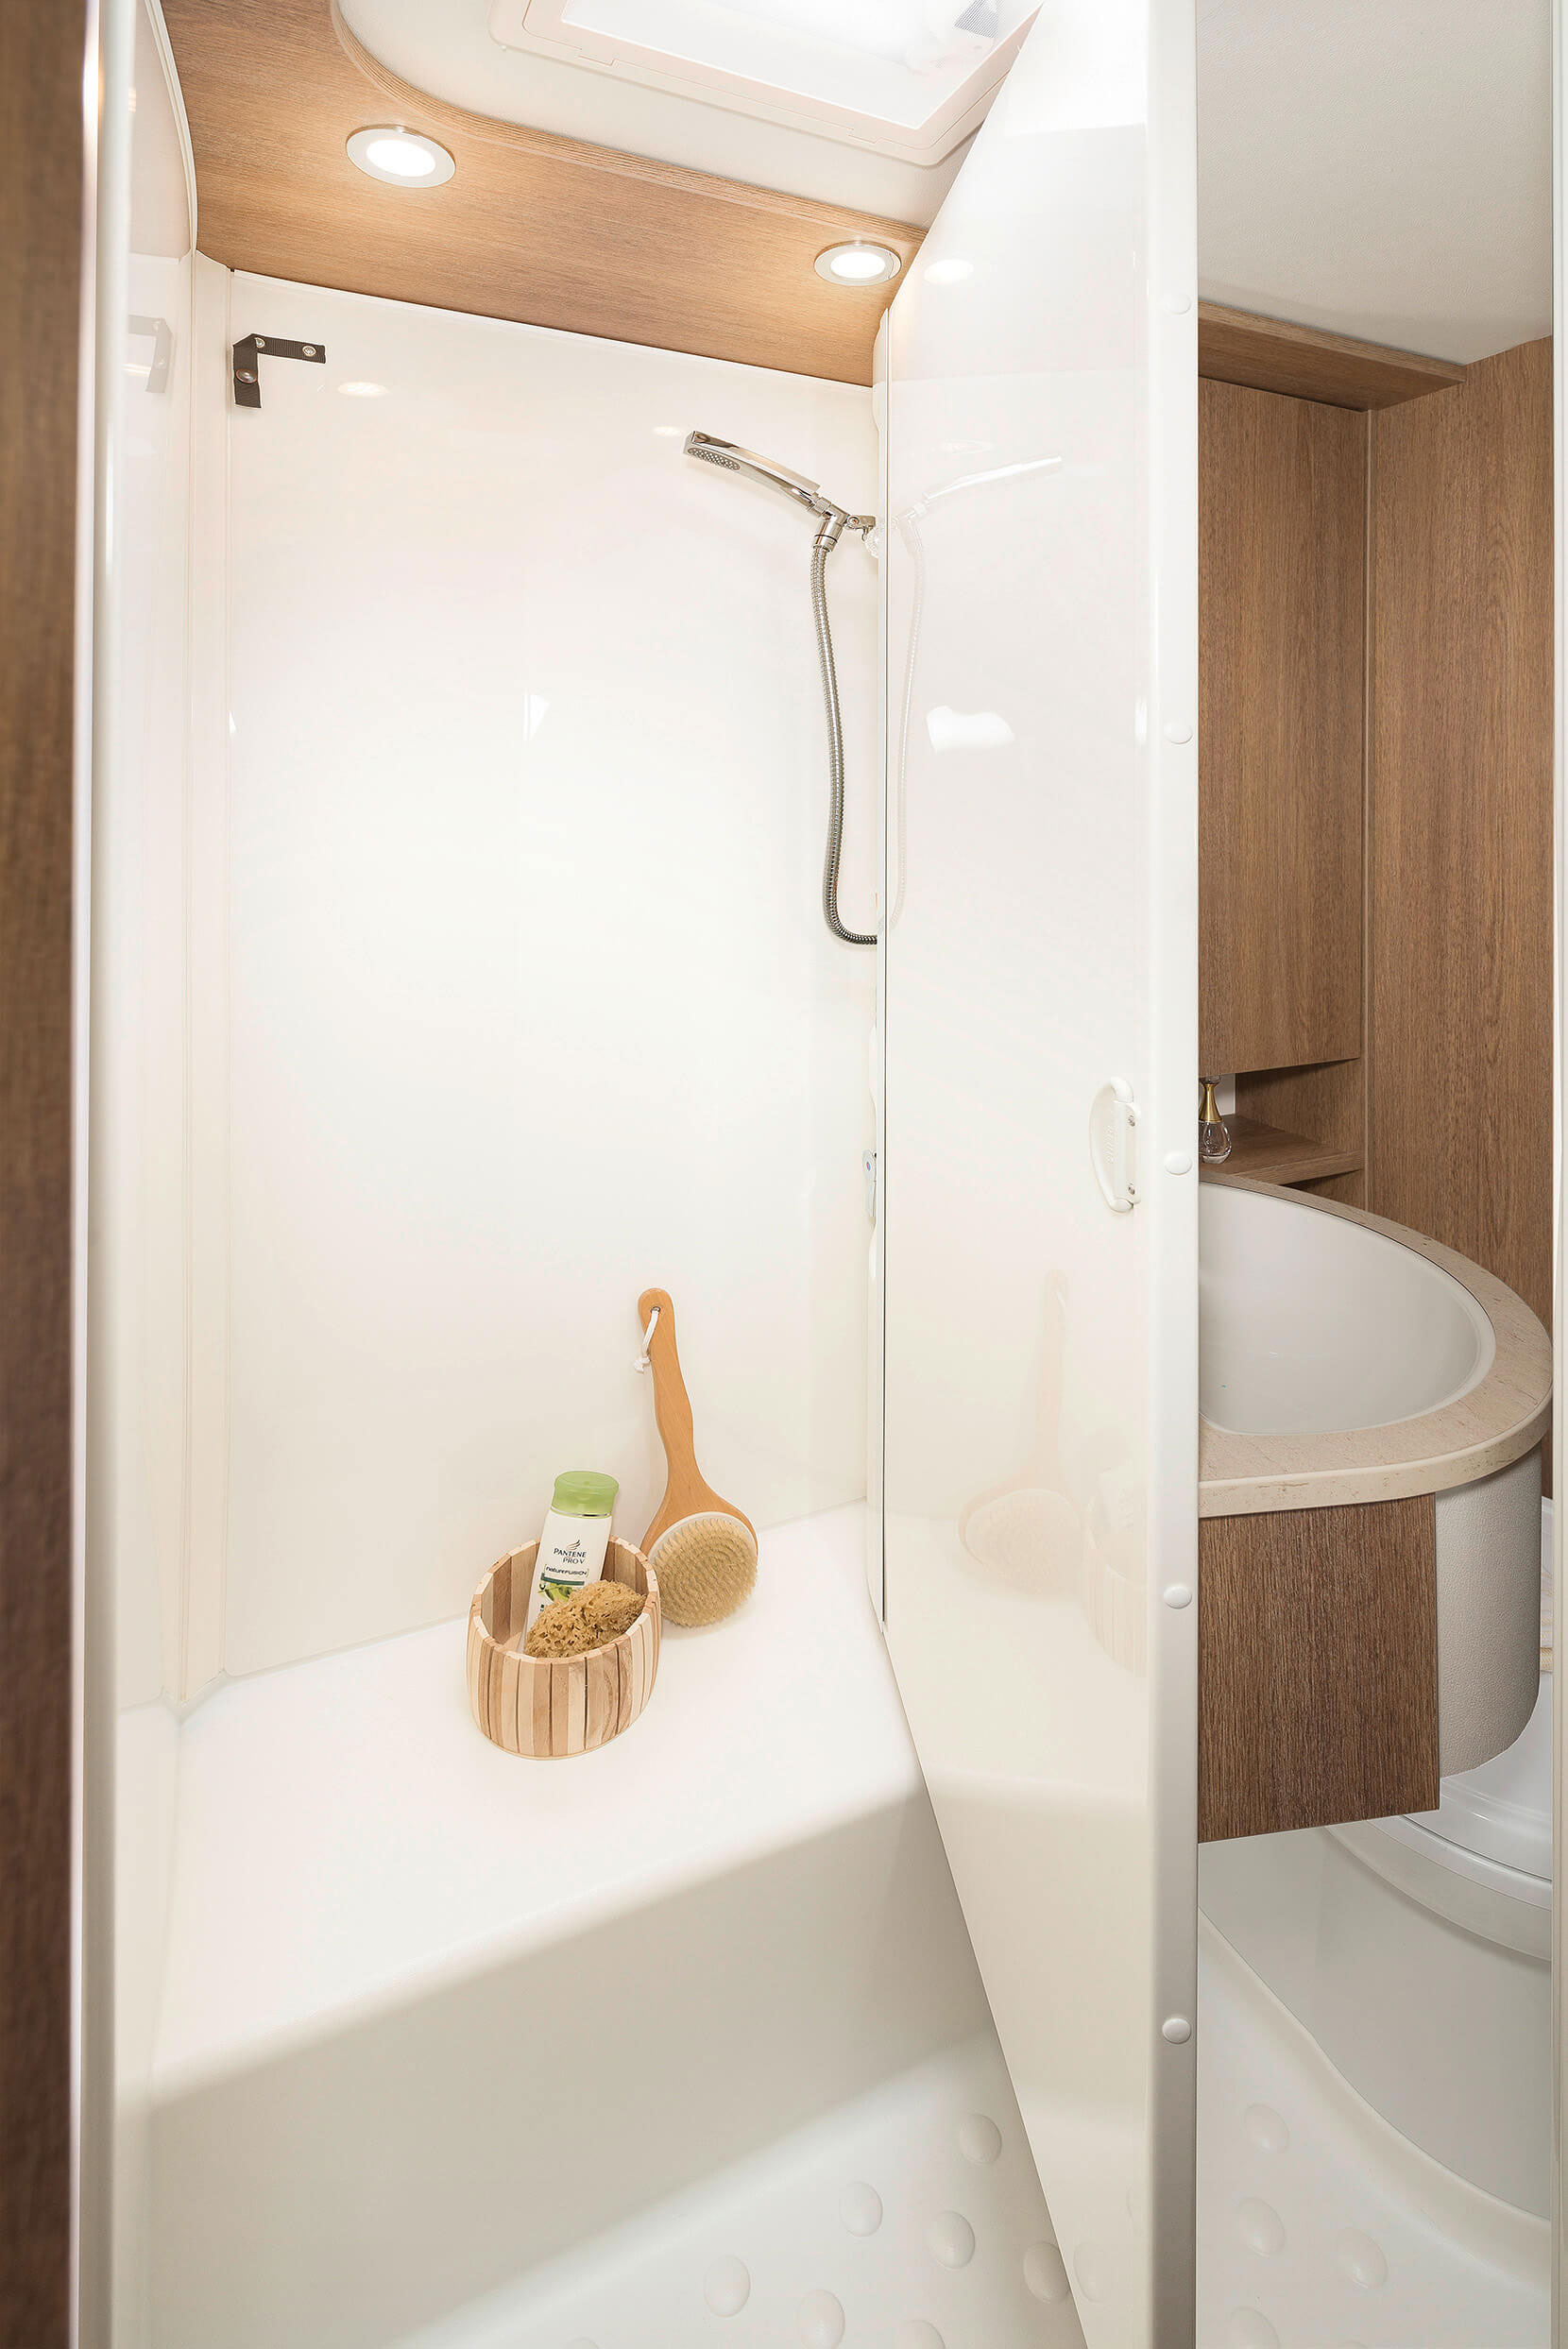 Modyfikowalna łazienka: jeden obrót wystarczy, aby kompaktową łazienkę zmienić w osobną kabinę prysznicową • A 5887